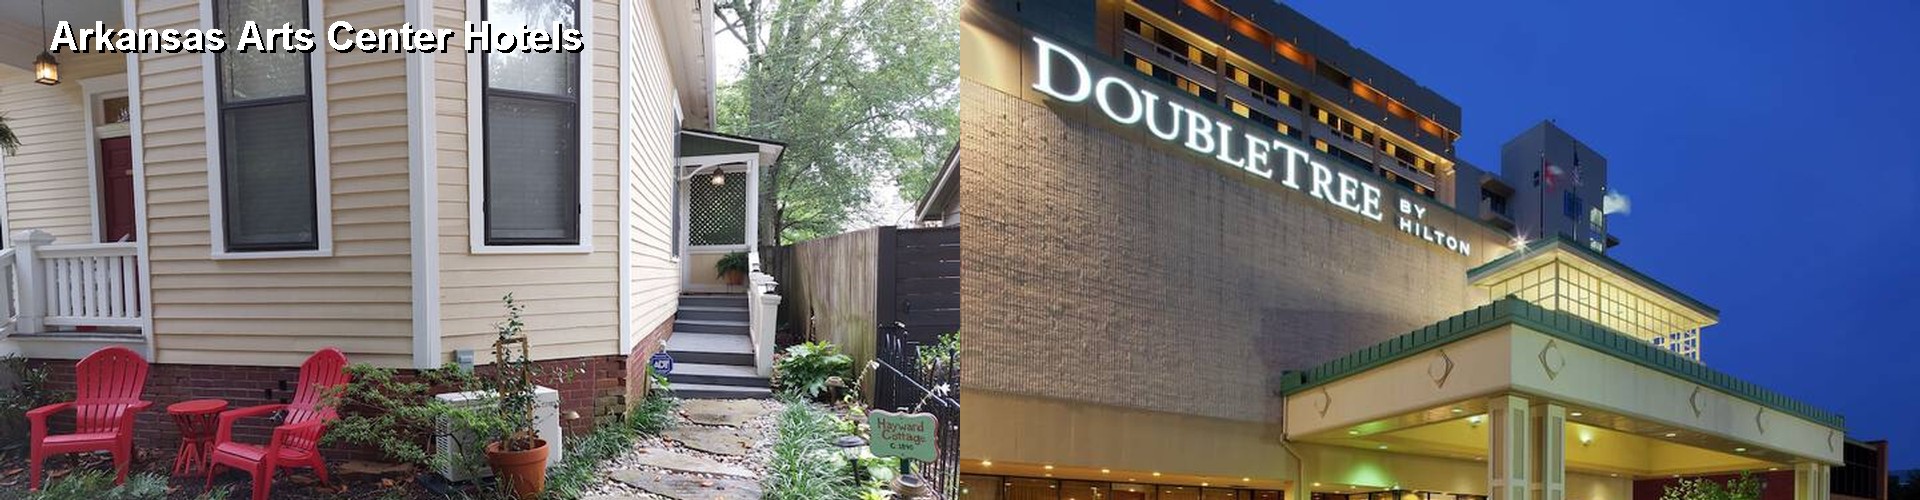 5 Best Hotels near Arkansas Arts Center